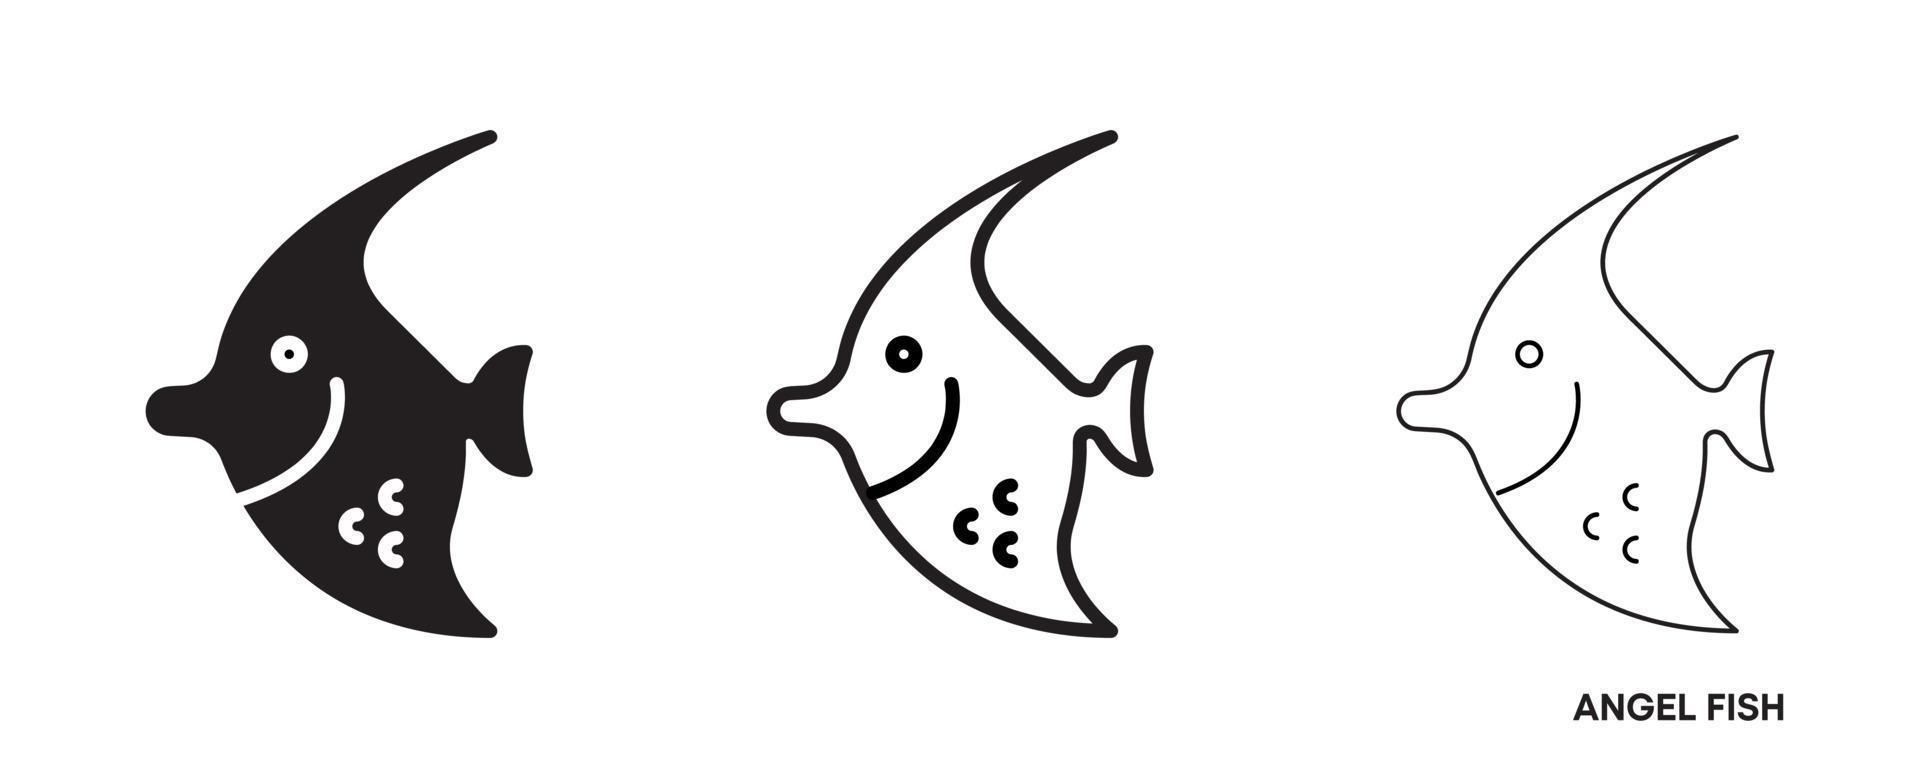 conjunto de iconos de línea de pez ángel. tales íconos incluyen un conjunto de íconos de peces ángel delgados, gruesos y de silueta. línea editable. icono de pescado. plantilla de logotipo de pescado. símbolo vectorial creativo del club de pesca o tienda web en línea. vector